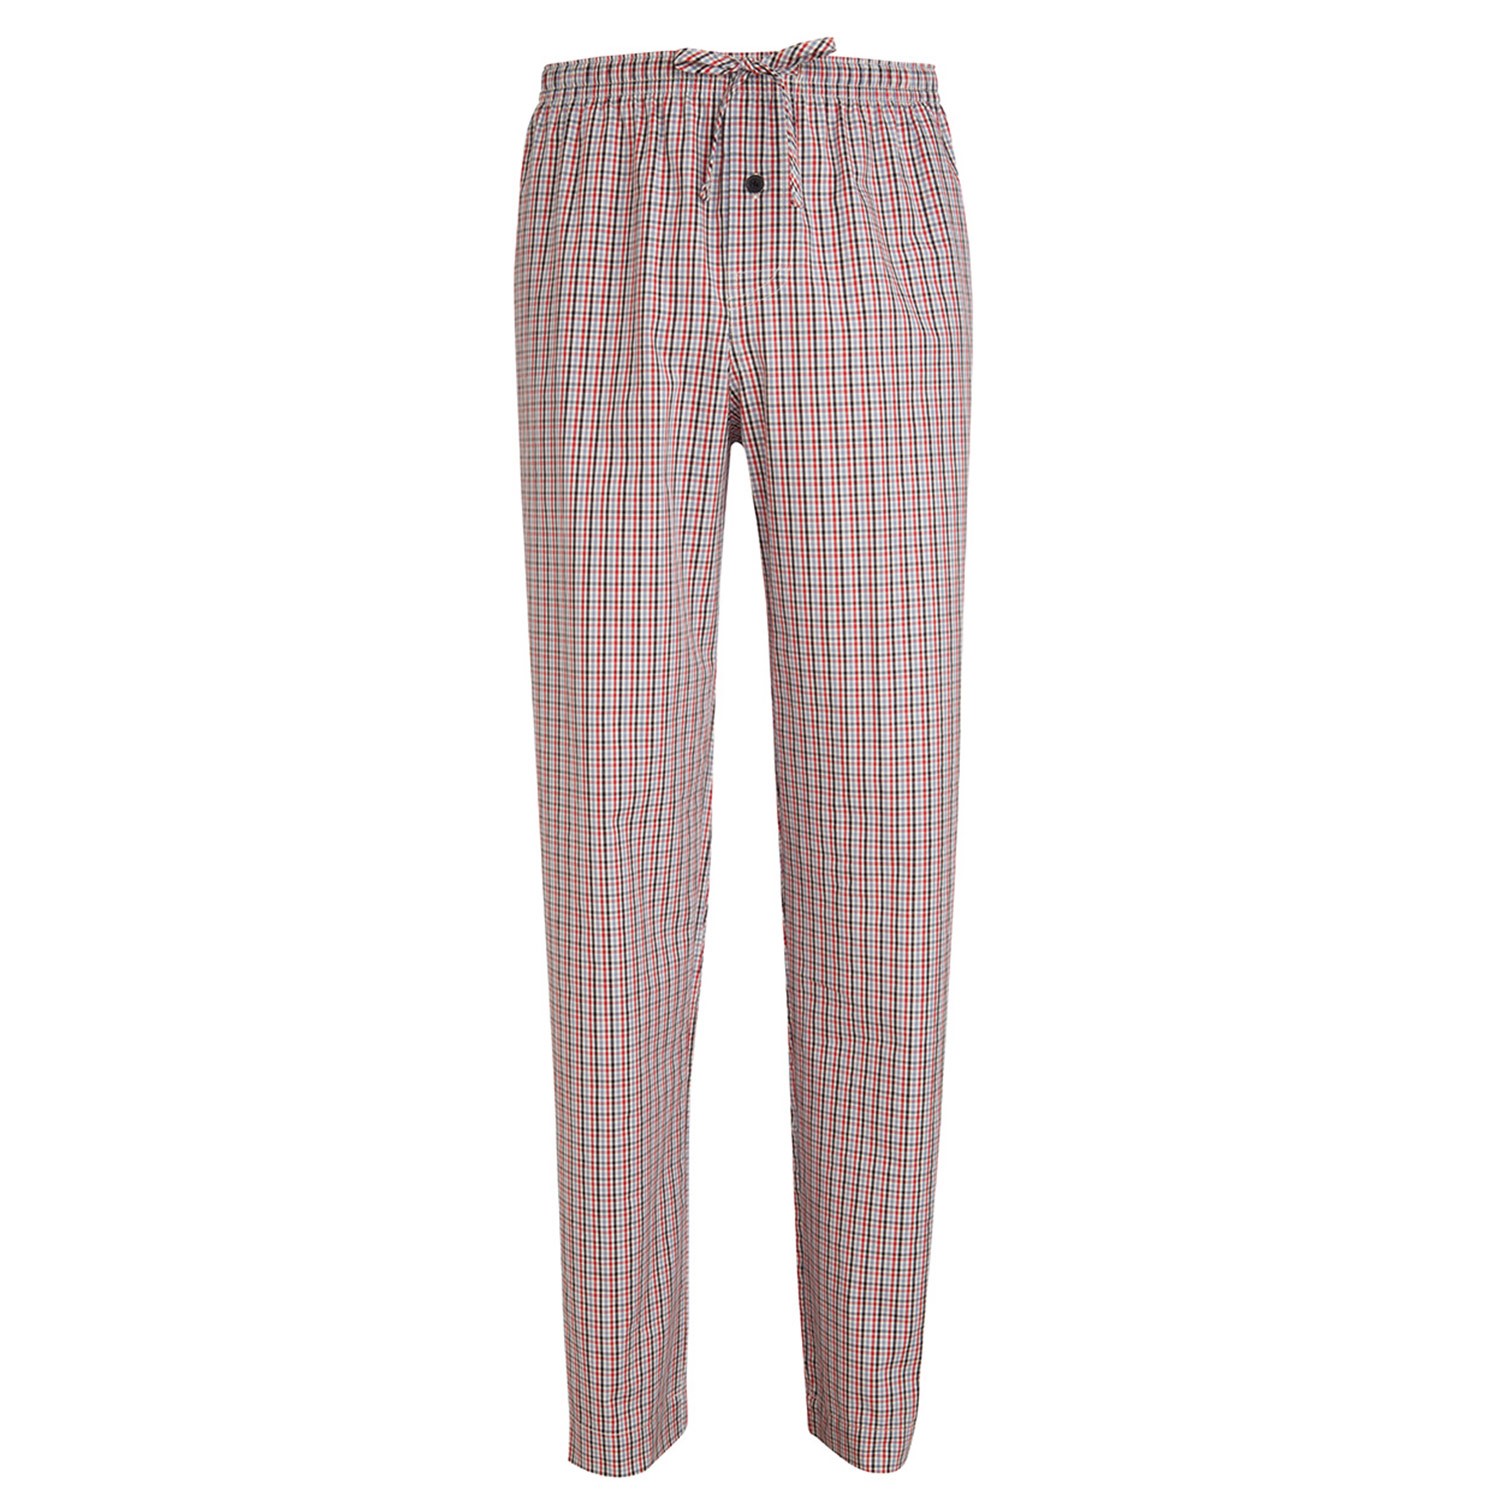 Jockey Pyjama Pants Woven 3XL-6XL